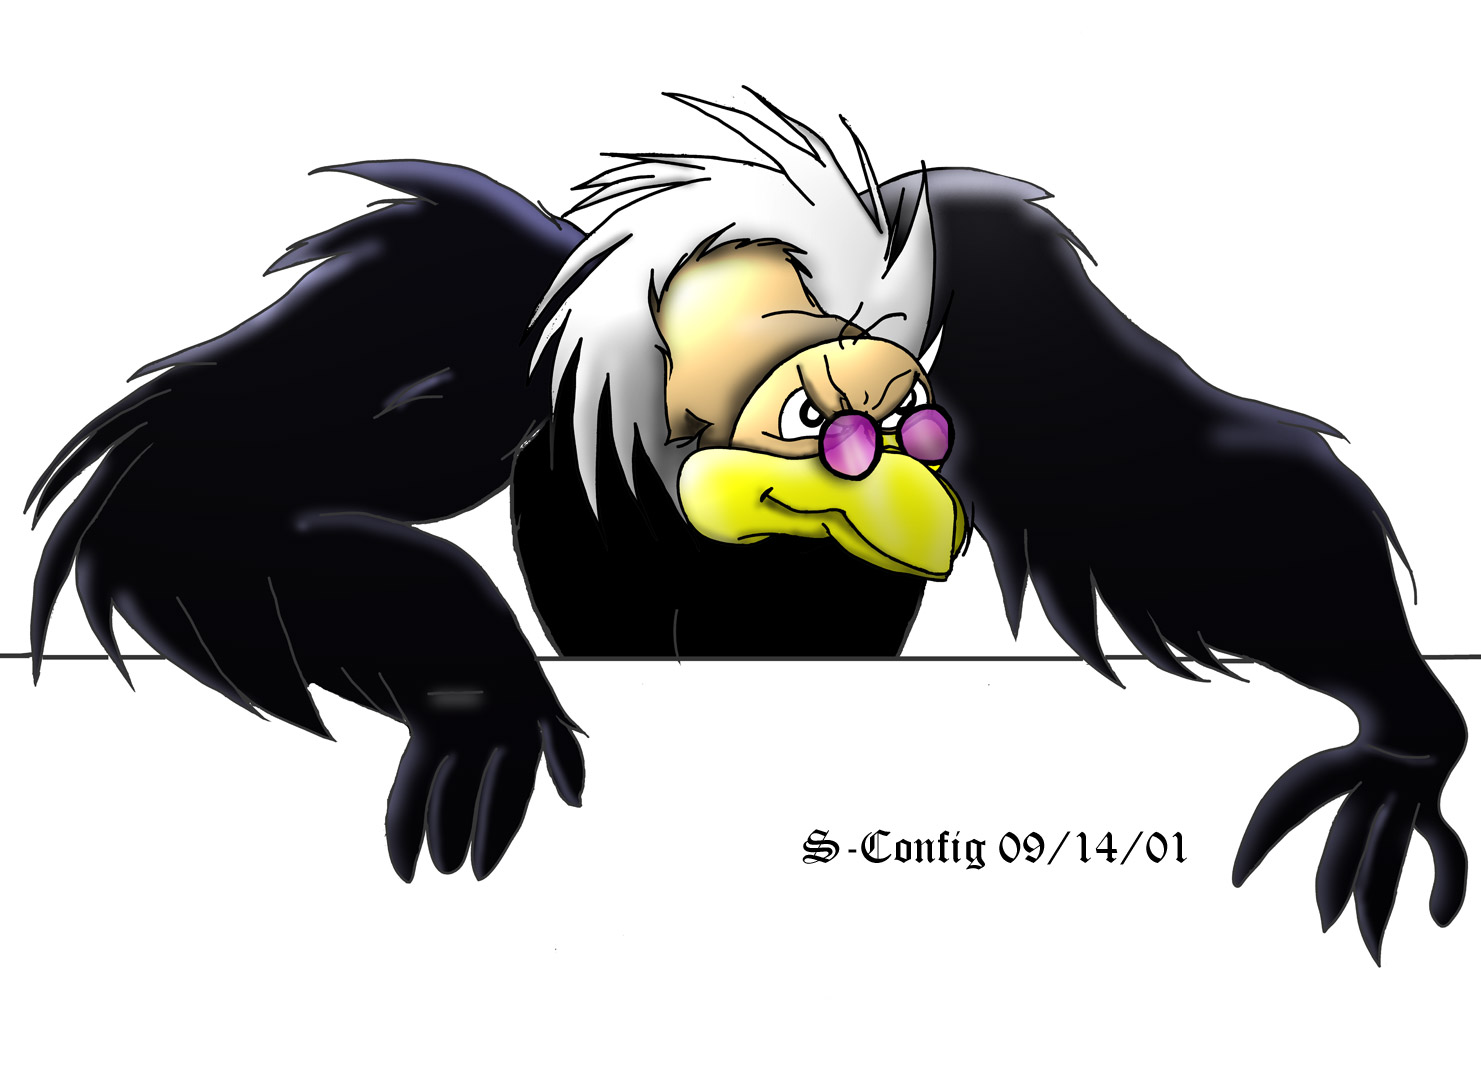 Vinney the Vulture 2-d Photoshop complete.